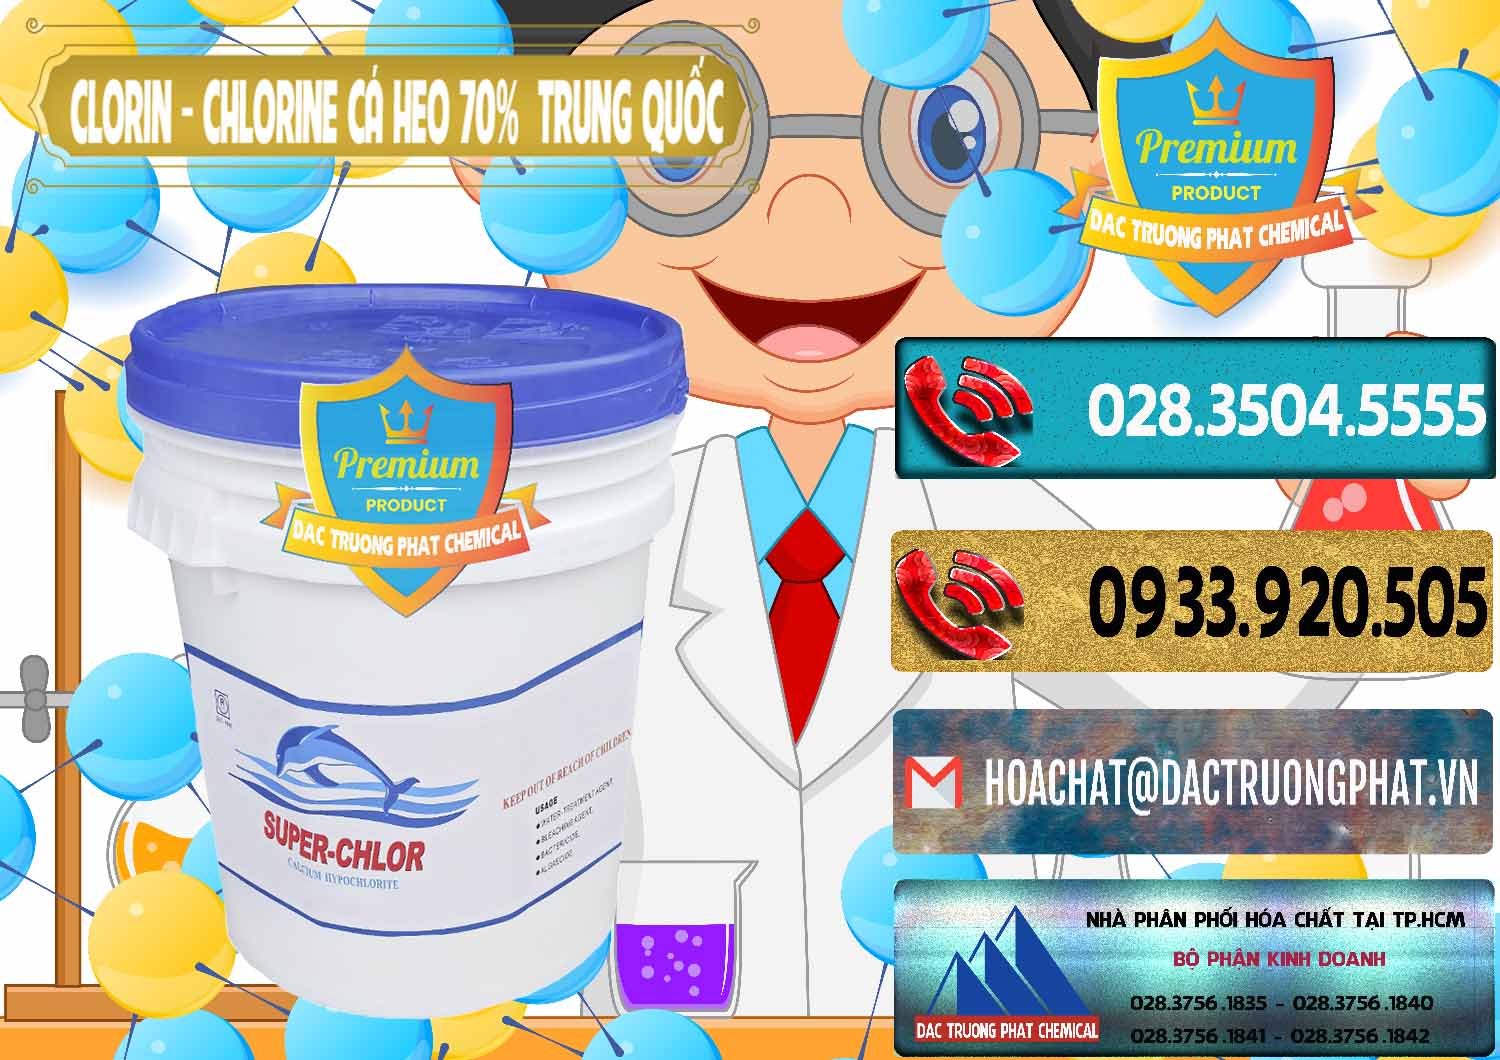 Cty kinh doanh và bán Clorin - Chlorine Cá Heo 70% Super Chlor Nắp Xanh Trung Quốc China - 0209 - Cty cung cấp & bán hóa chất tại TP.HCM - hoachatdetnhuom.com